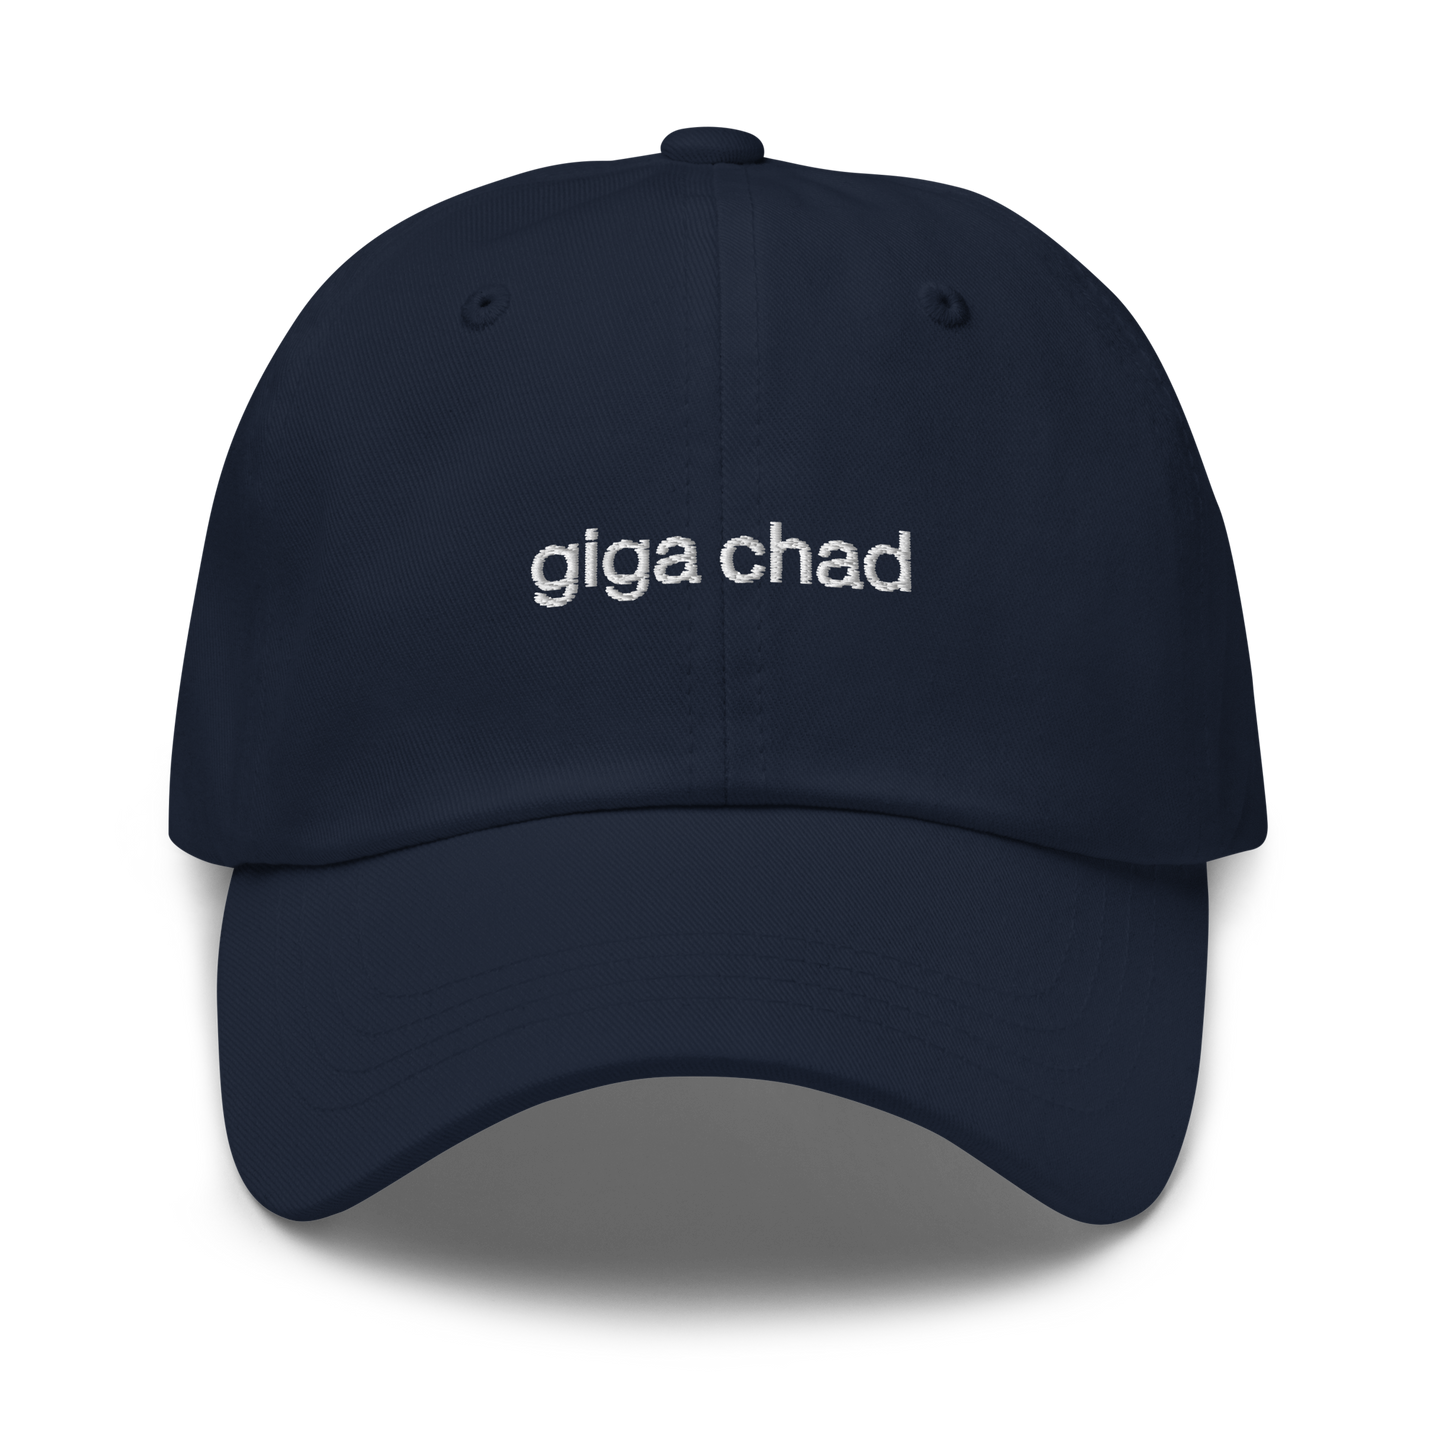 giga chad hat